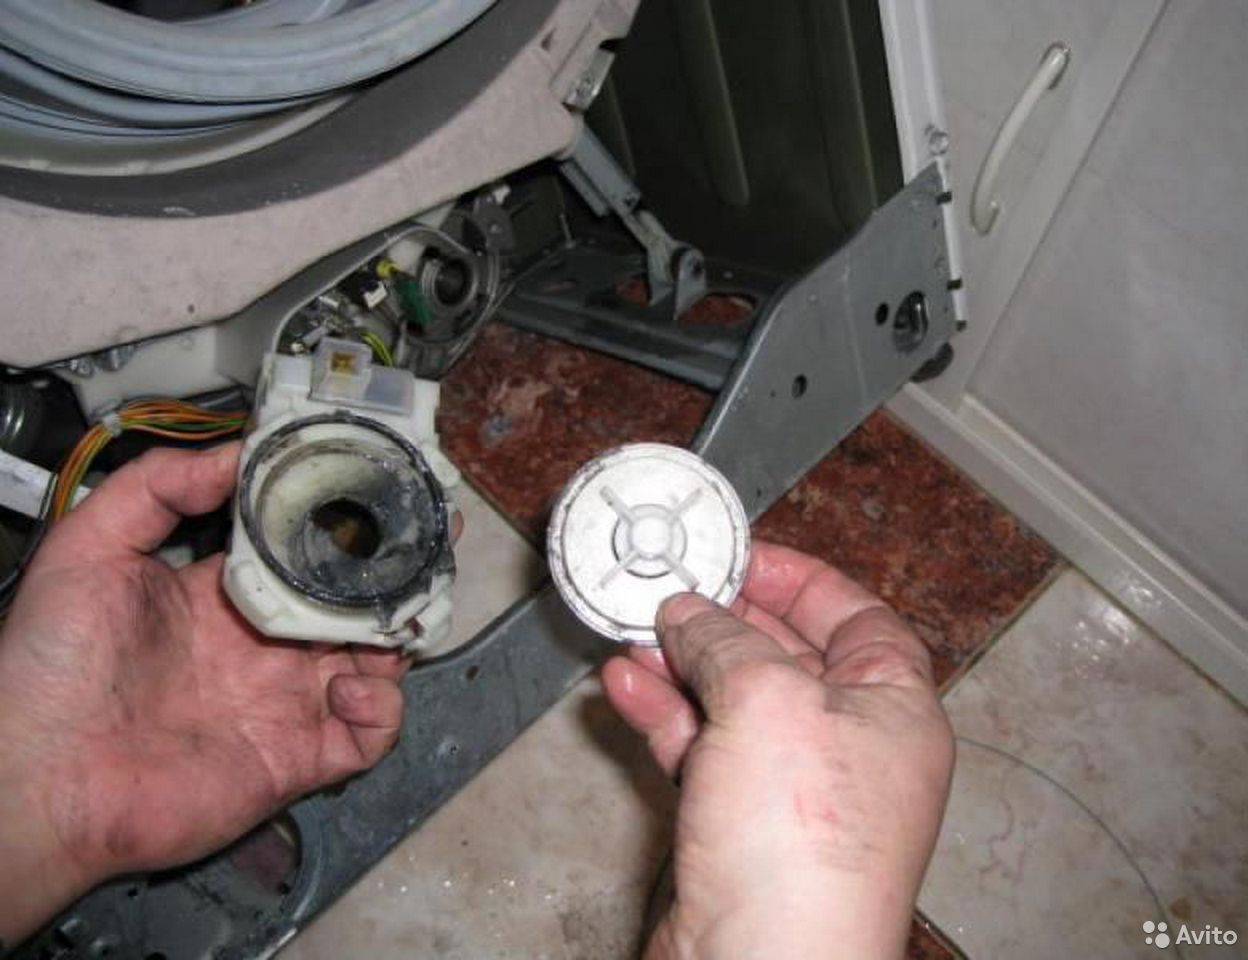 Как разобрать насос стиральной машины своими руками